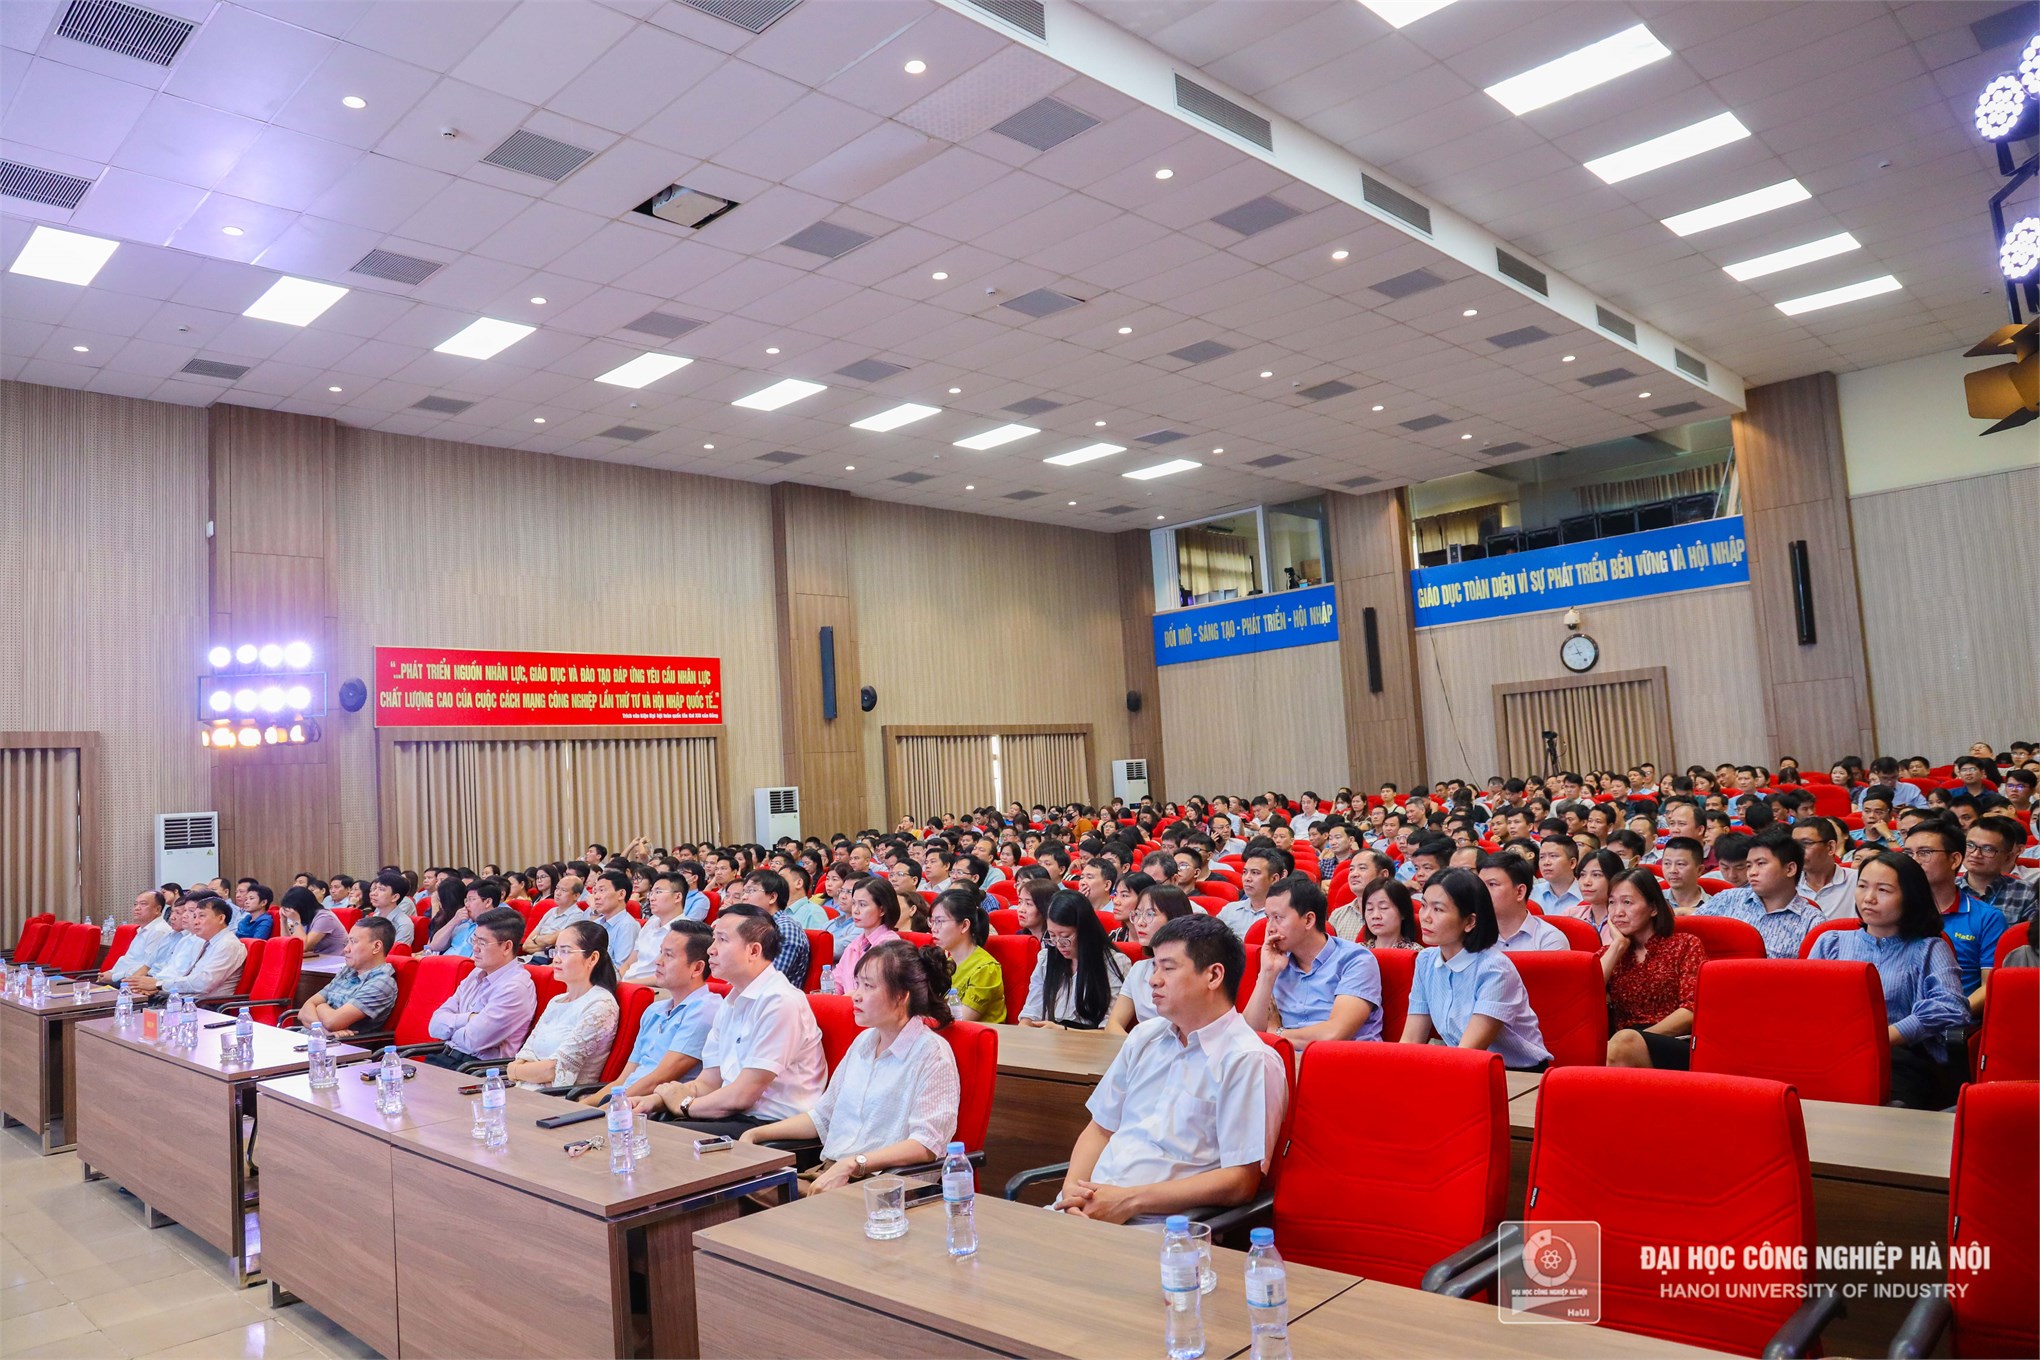 Kỷ niệm 134 năm ngày sinh Chủ tịch Hồ Chí Minh, Hội nghị thông tin thời sự quốc tế và trao giải cuộc thi bảo vệ nền tảng tư tưởng của Đảng năm 2024